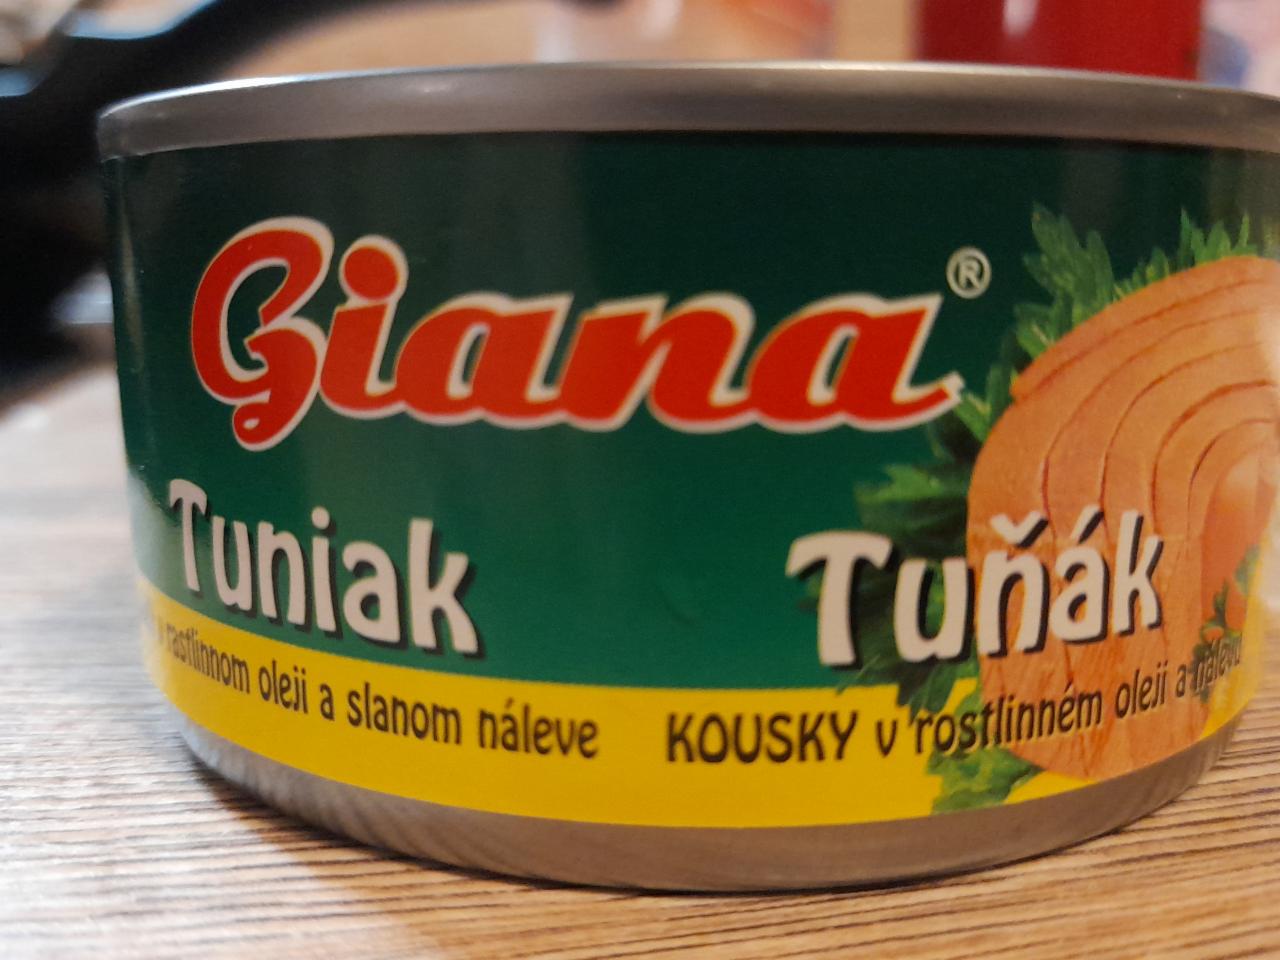 Fotografie - Tuňák kousky v rostlinném oleji a slaném nálevu Giana